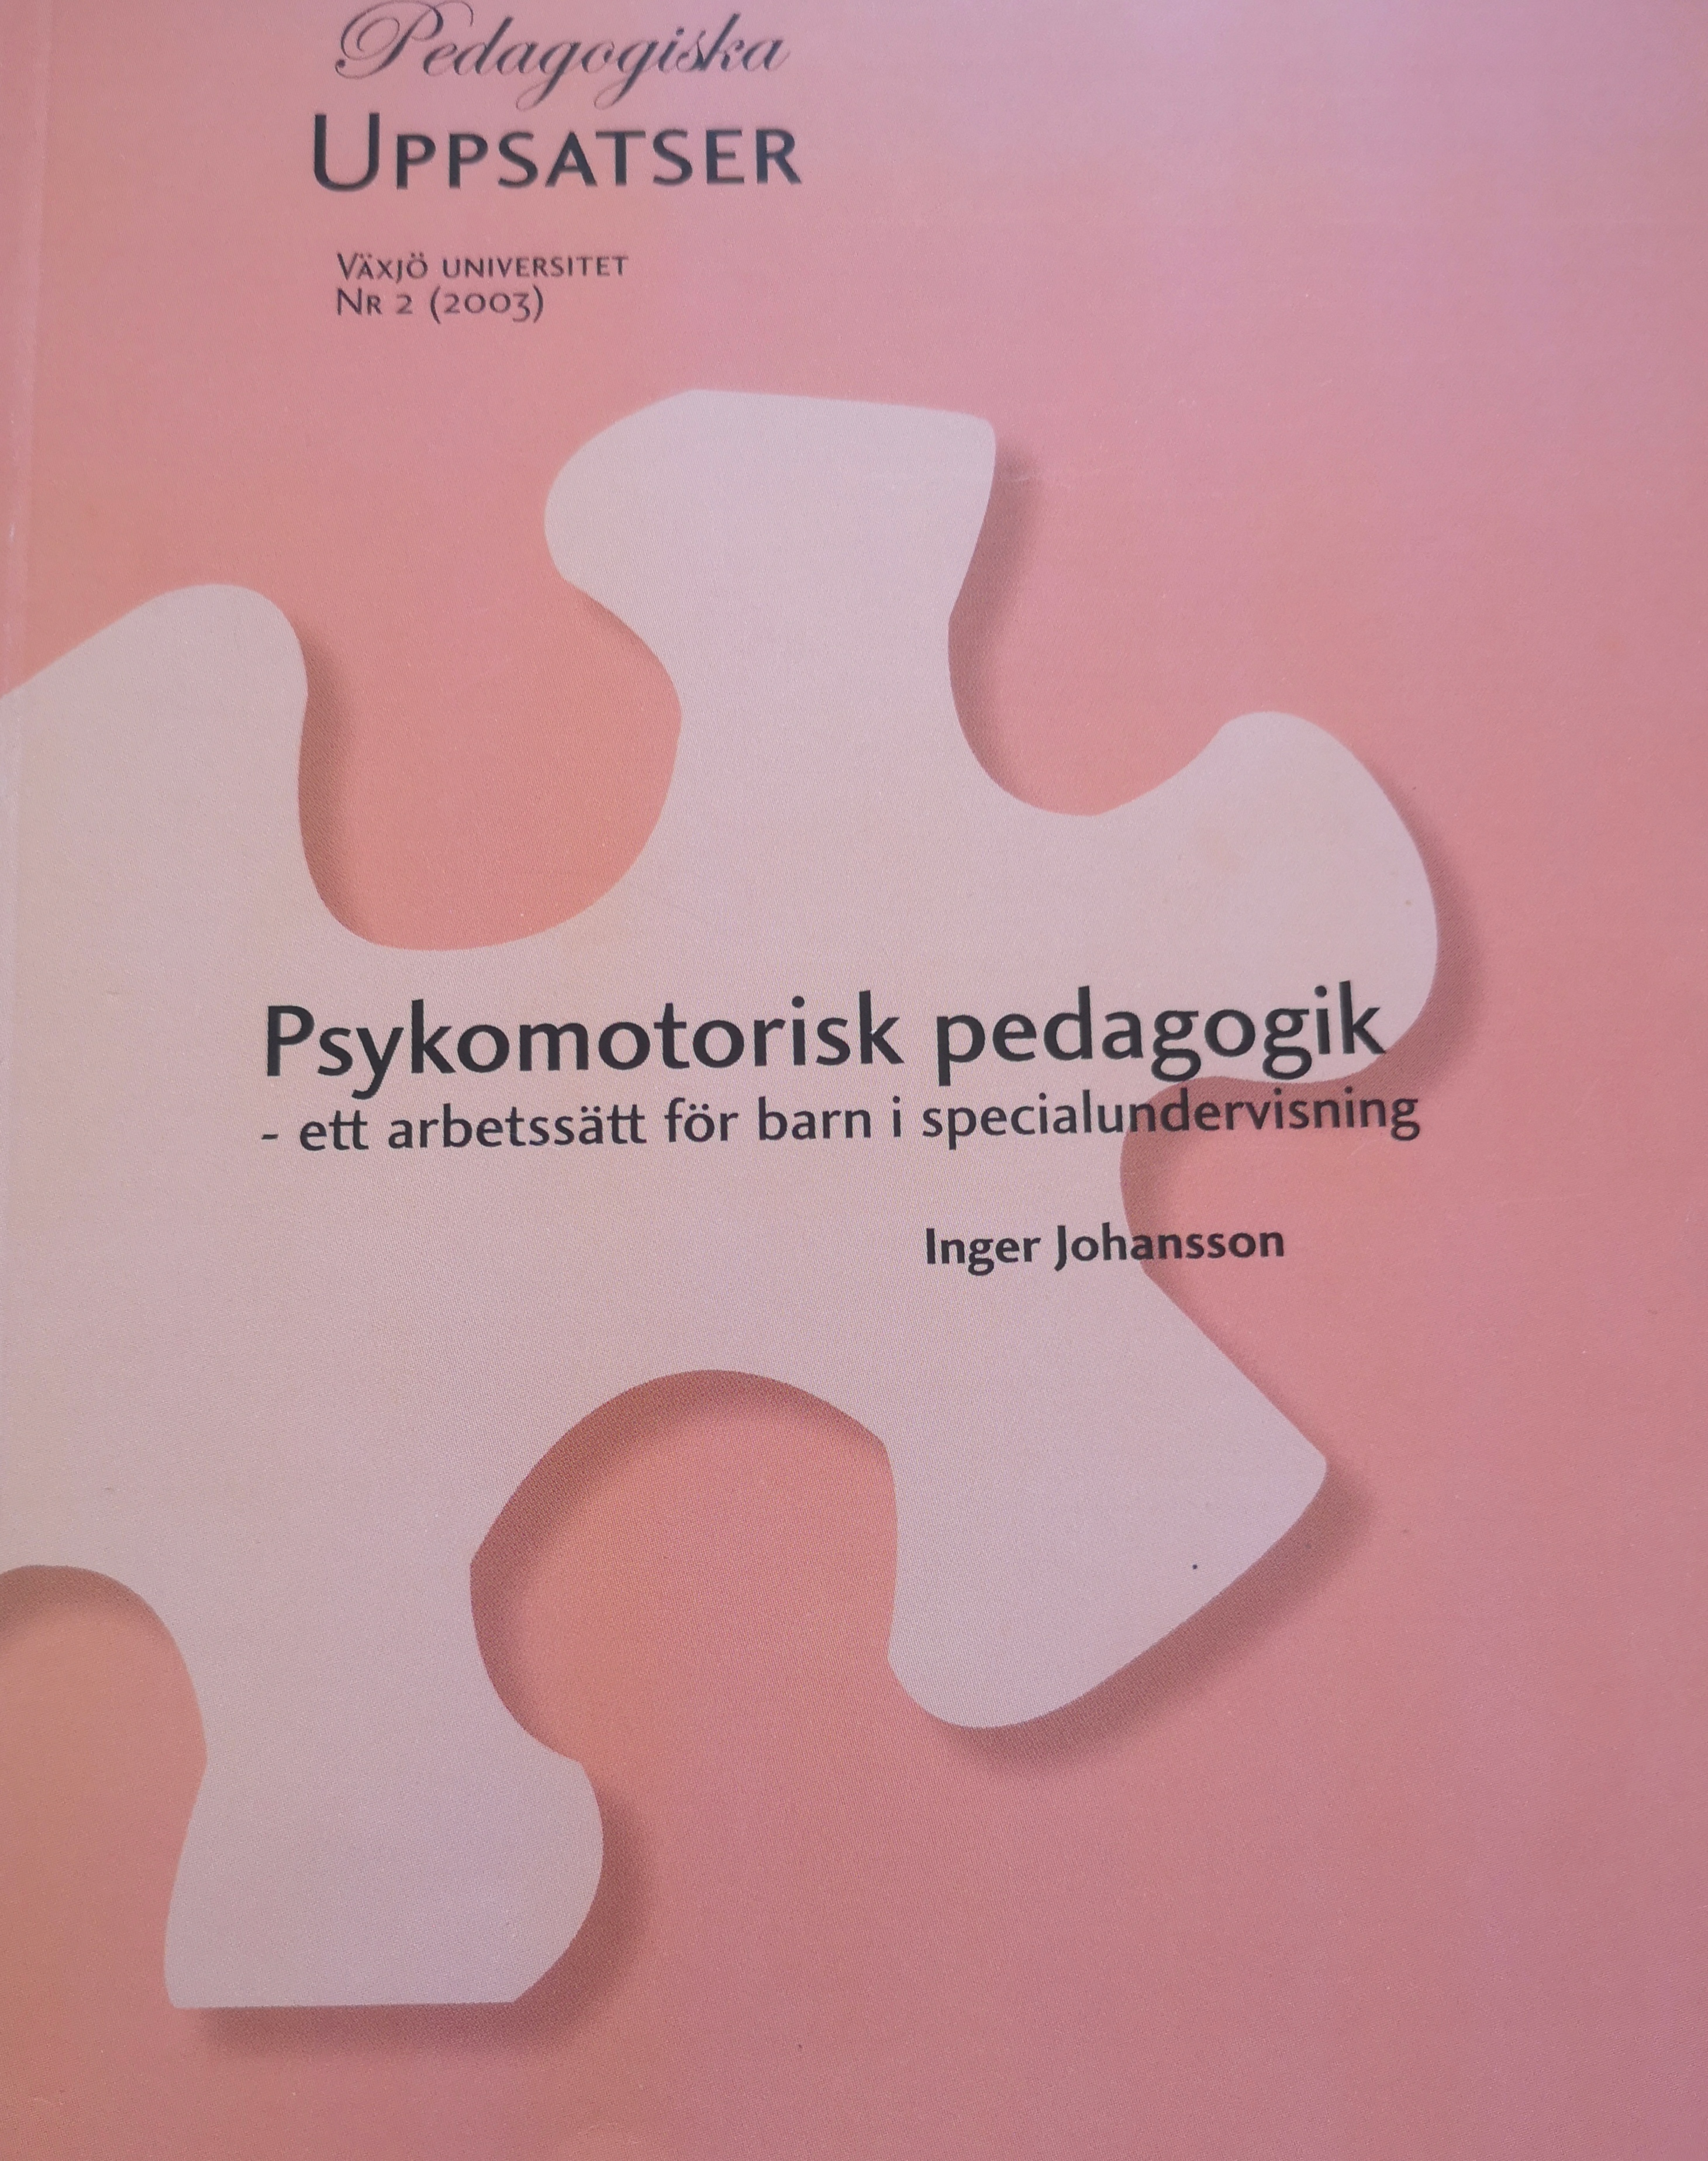 Psykomotorisk pedagogik: ett arbetssätt för barn i specialundervsiningVolym 2 av Pedagogiska uppsatser / Växjö universitet, ISSN 1651-2871; Inger Johansson; 2003